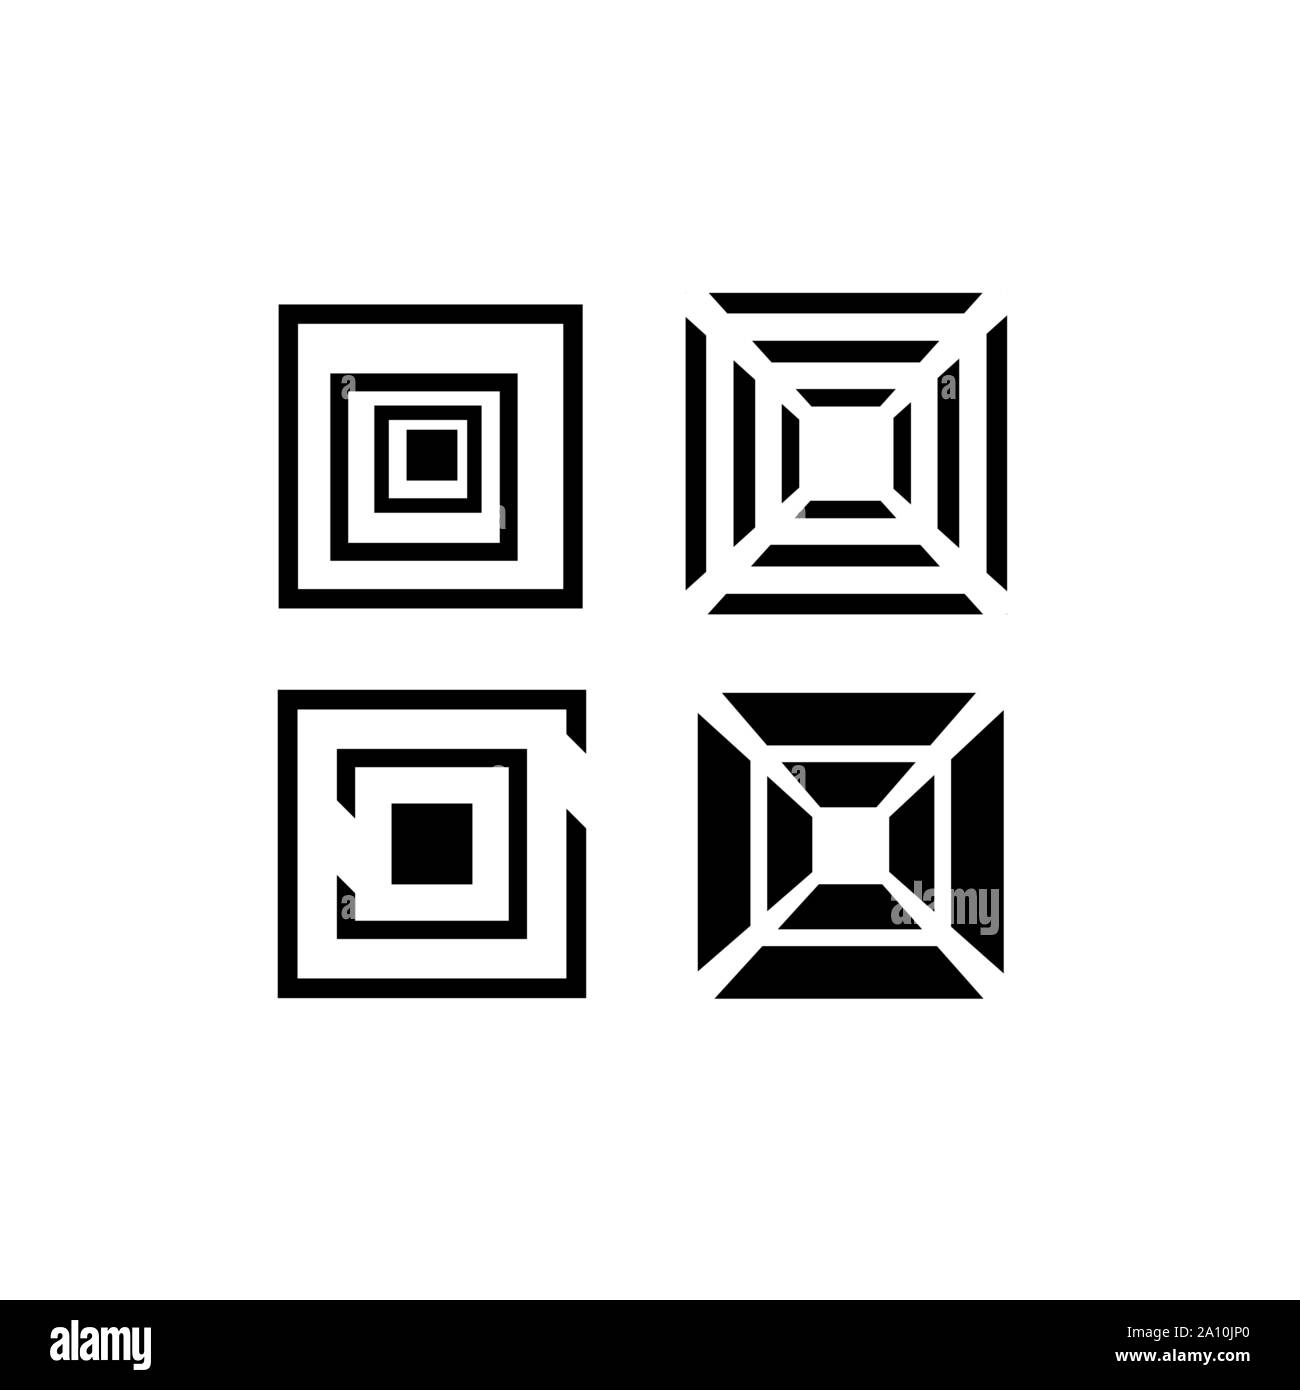 Forme géométrique abstraite forme carré empilés l'élément de conception de logo Illustration de Vecteur